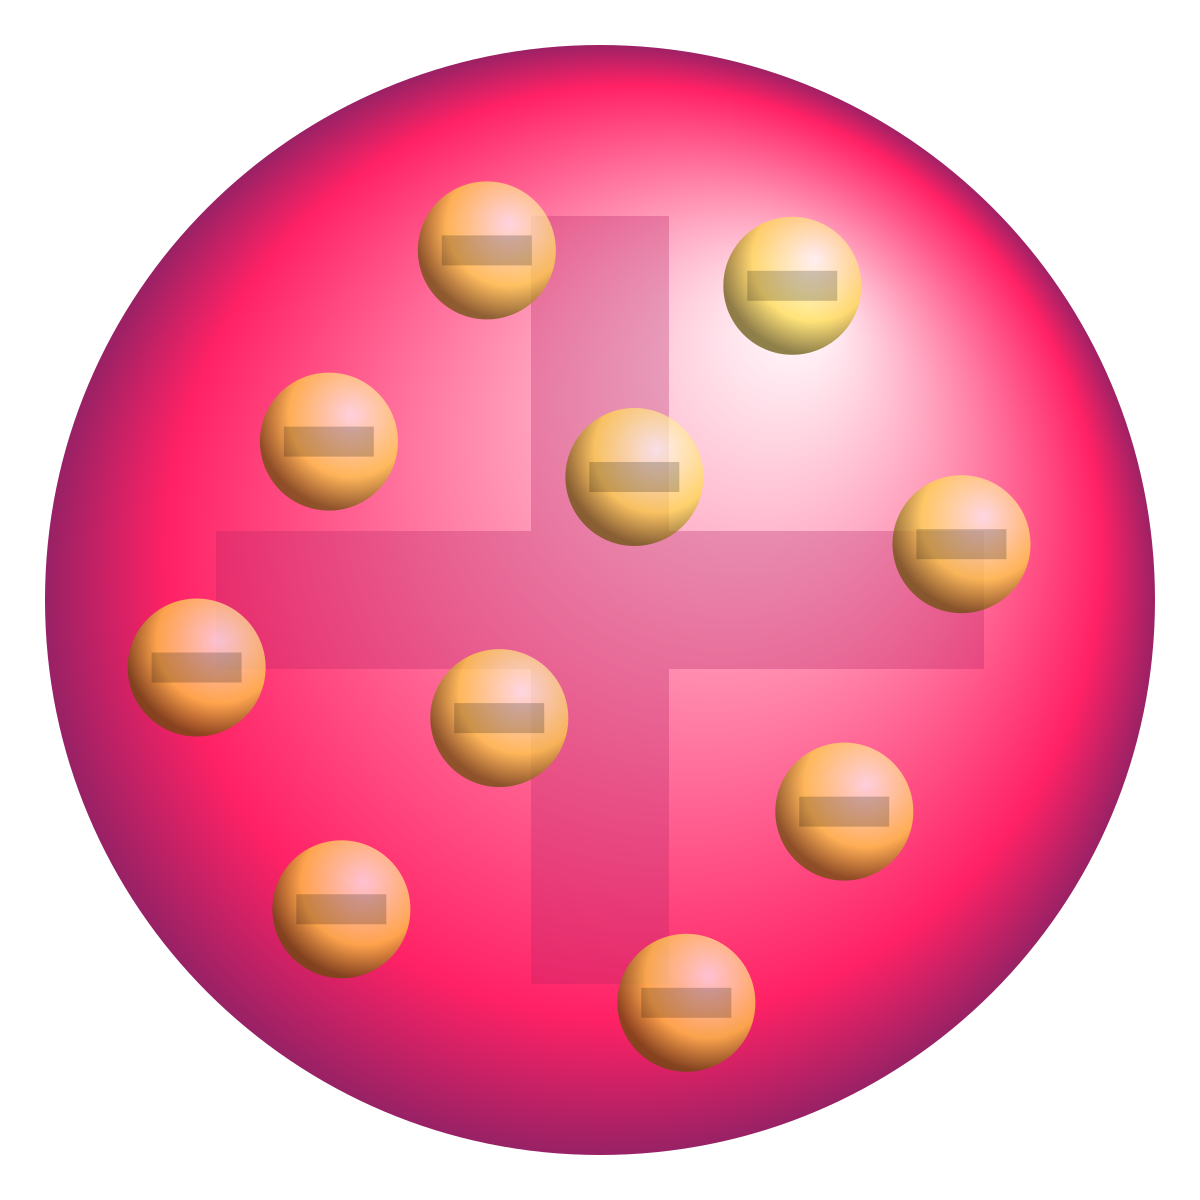 Modelo atómico de Thomson - Wikipedia, la enciclopedia libre